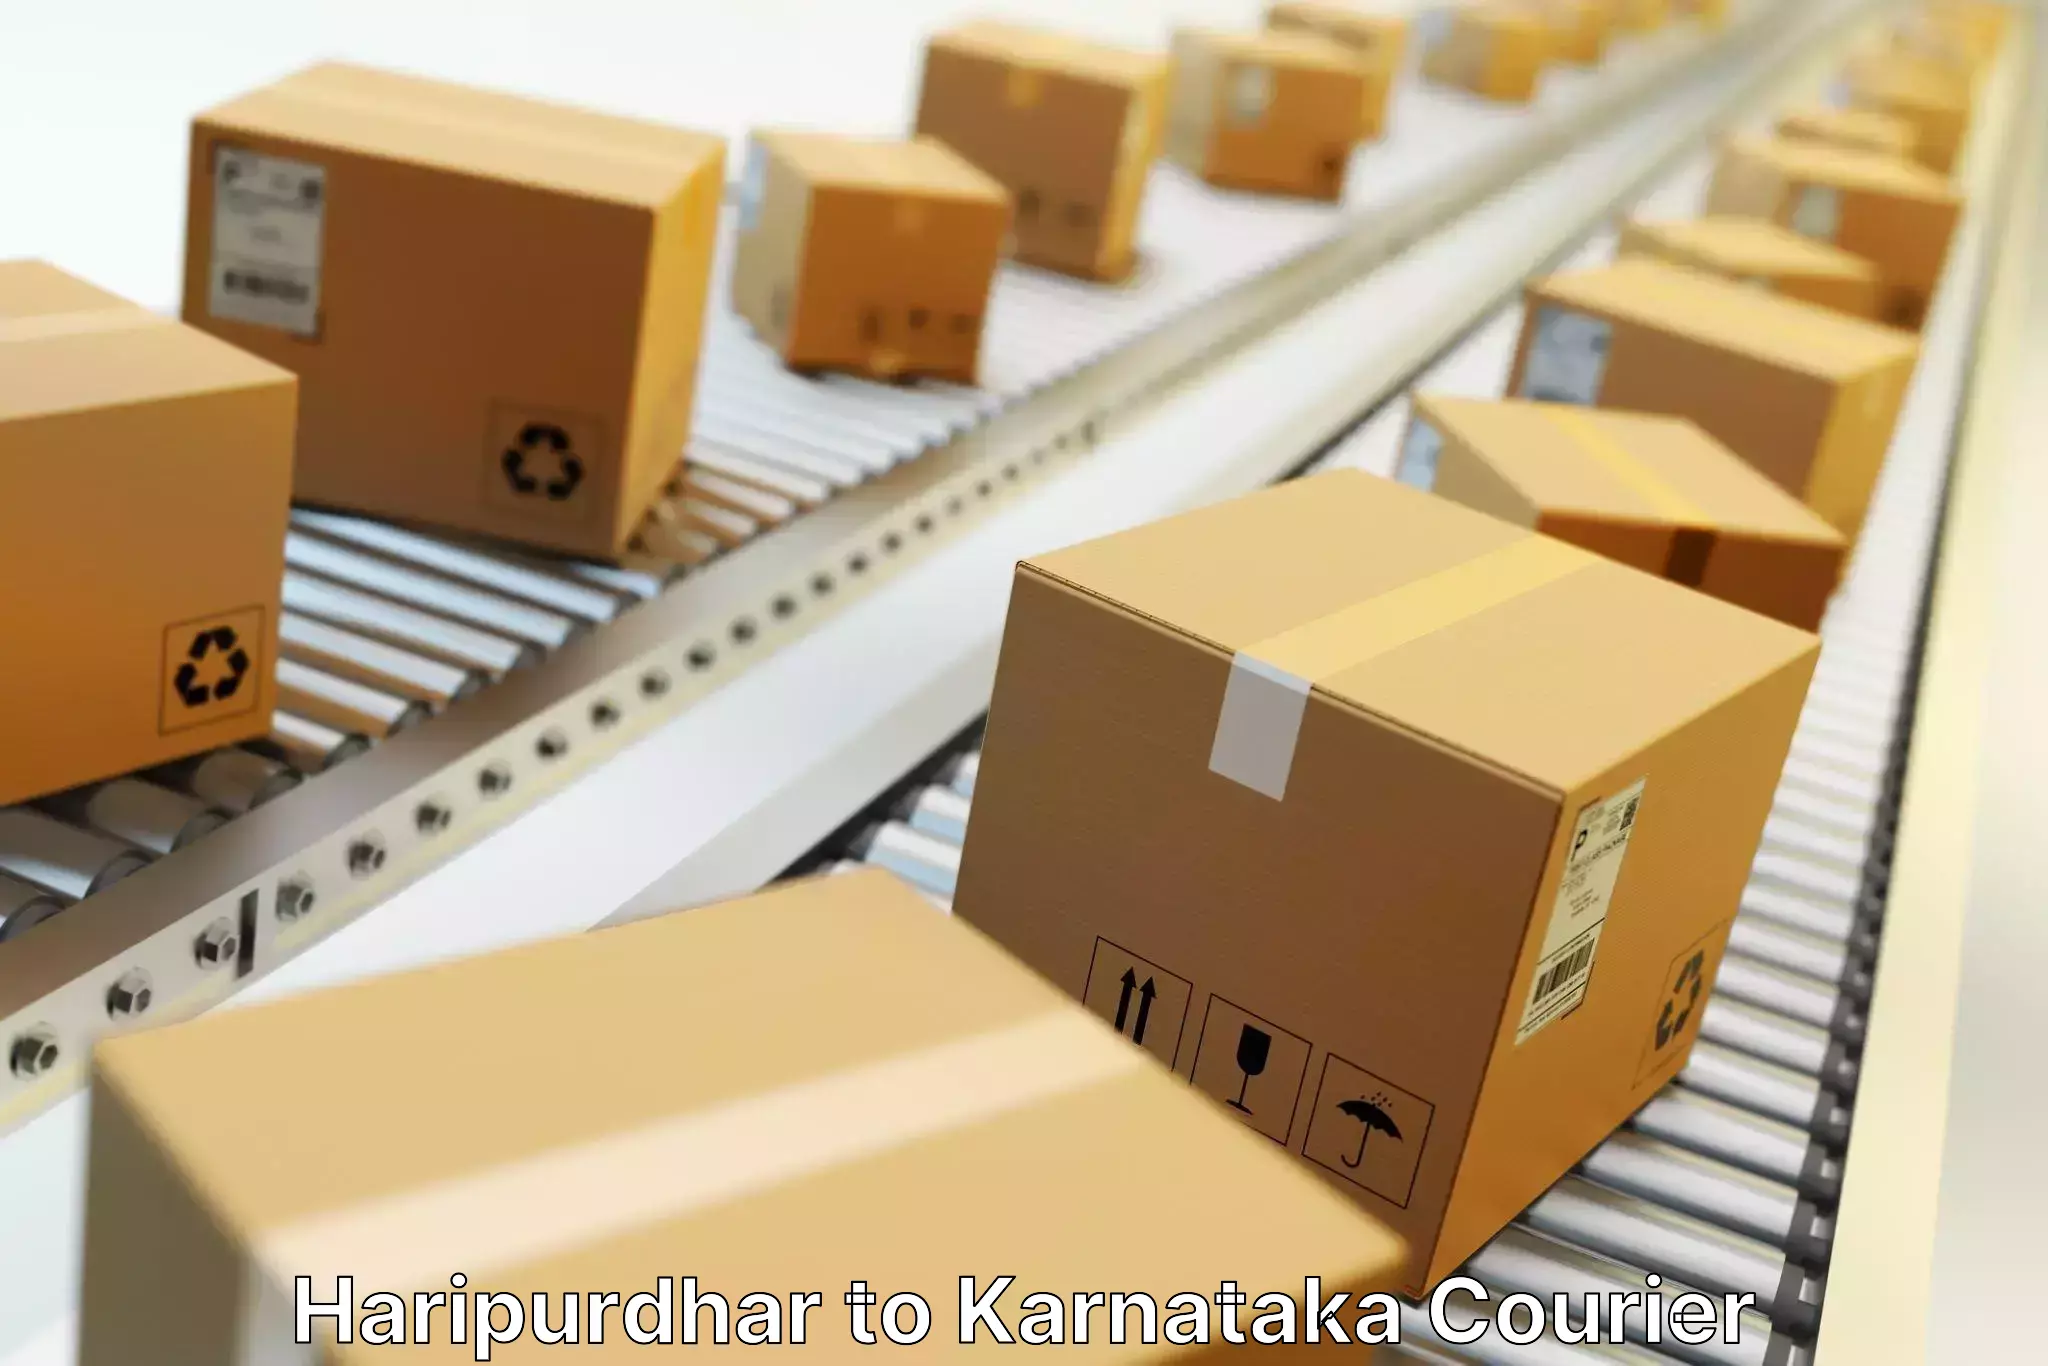 Efficient shipping platforms in Haripurdhar to Yenepoya Mangalore